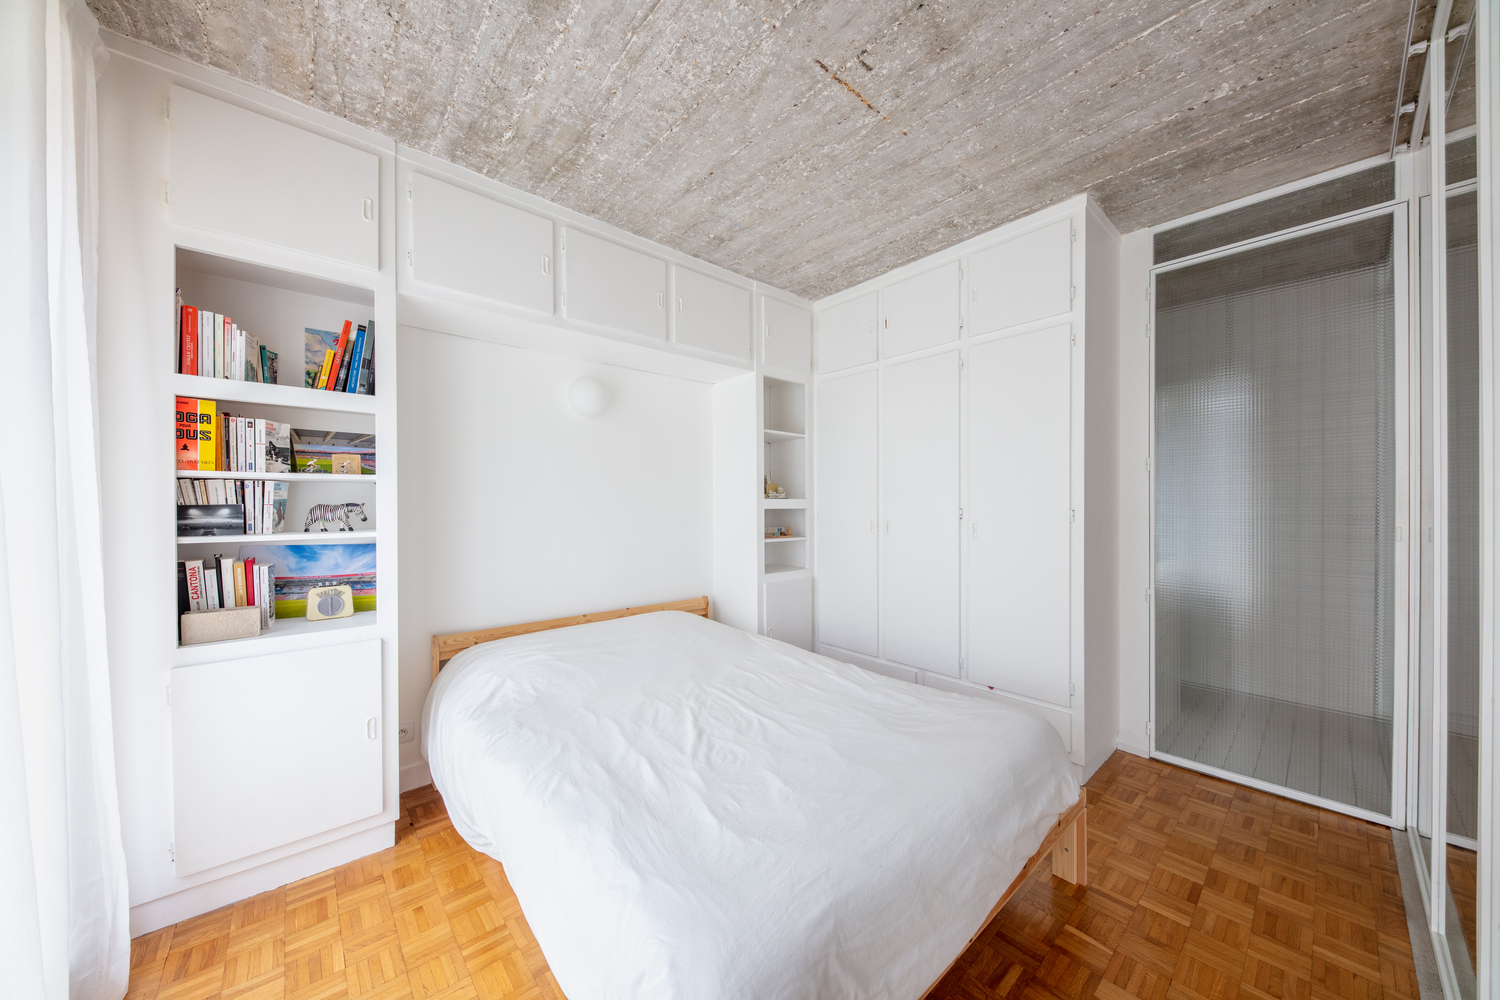 hình ảnh toàn cảnh phòng ngủ với ga gối màu trắng, tủ kệ lưu trữ cùng tông, sàn gỗ màu sáng